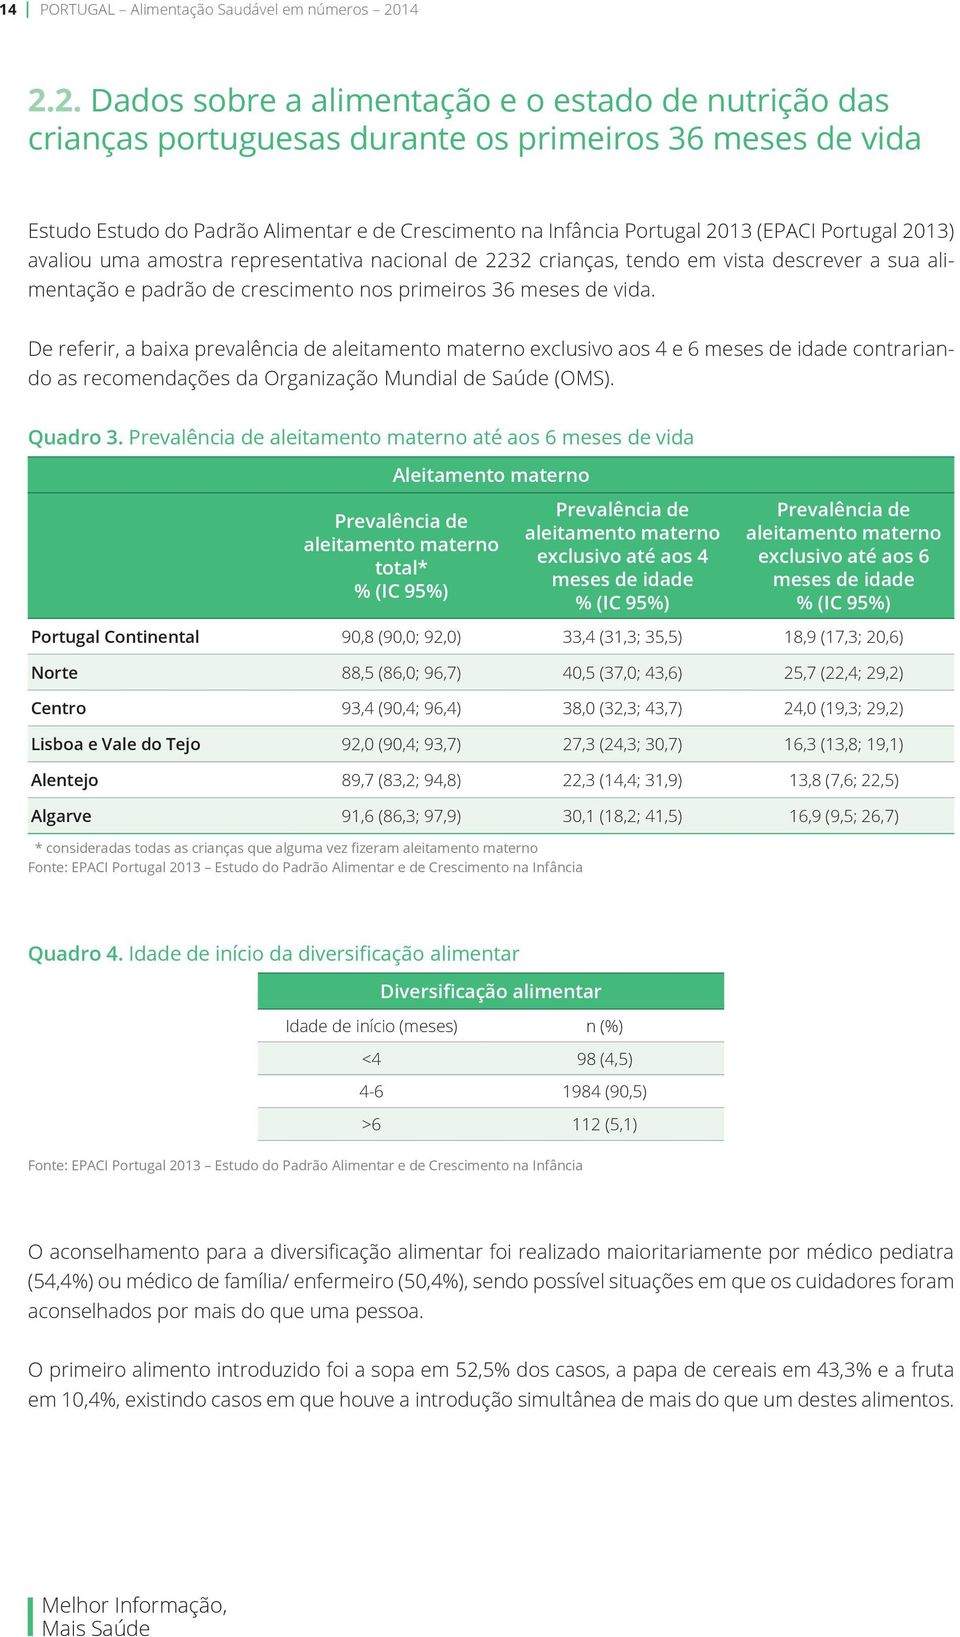 (EPACI Portugal 2013) avaliou uma amostra representativa nacional de 2232 crianças, tendo em vista descrever a sua alimentação e padrão de crescimento nos primeiros 36 meses de vida.